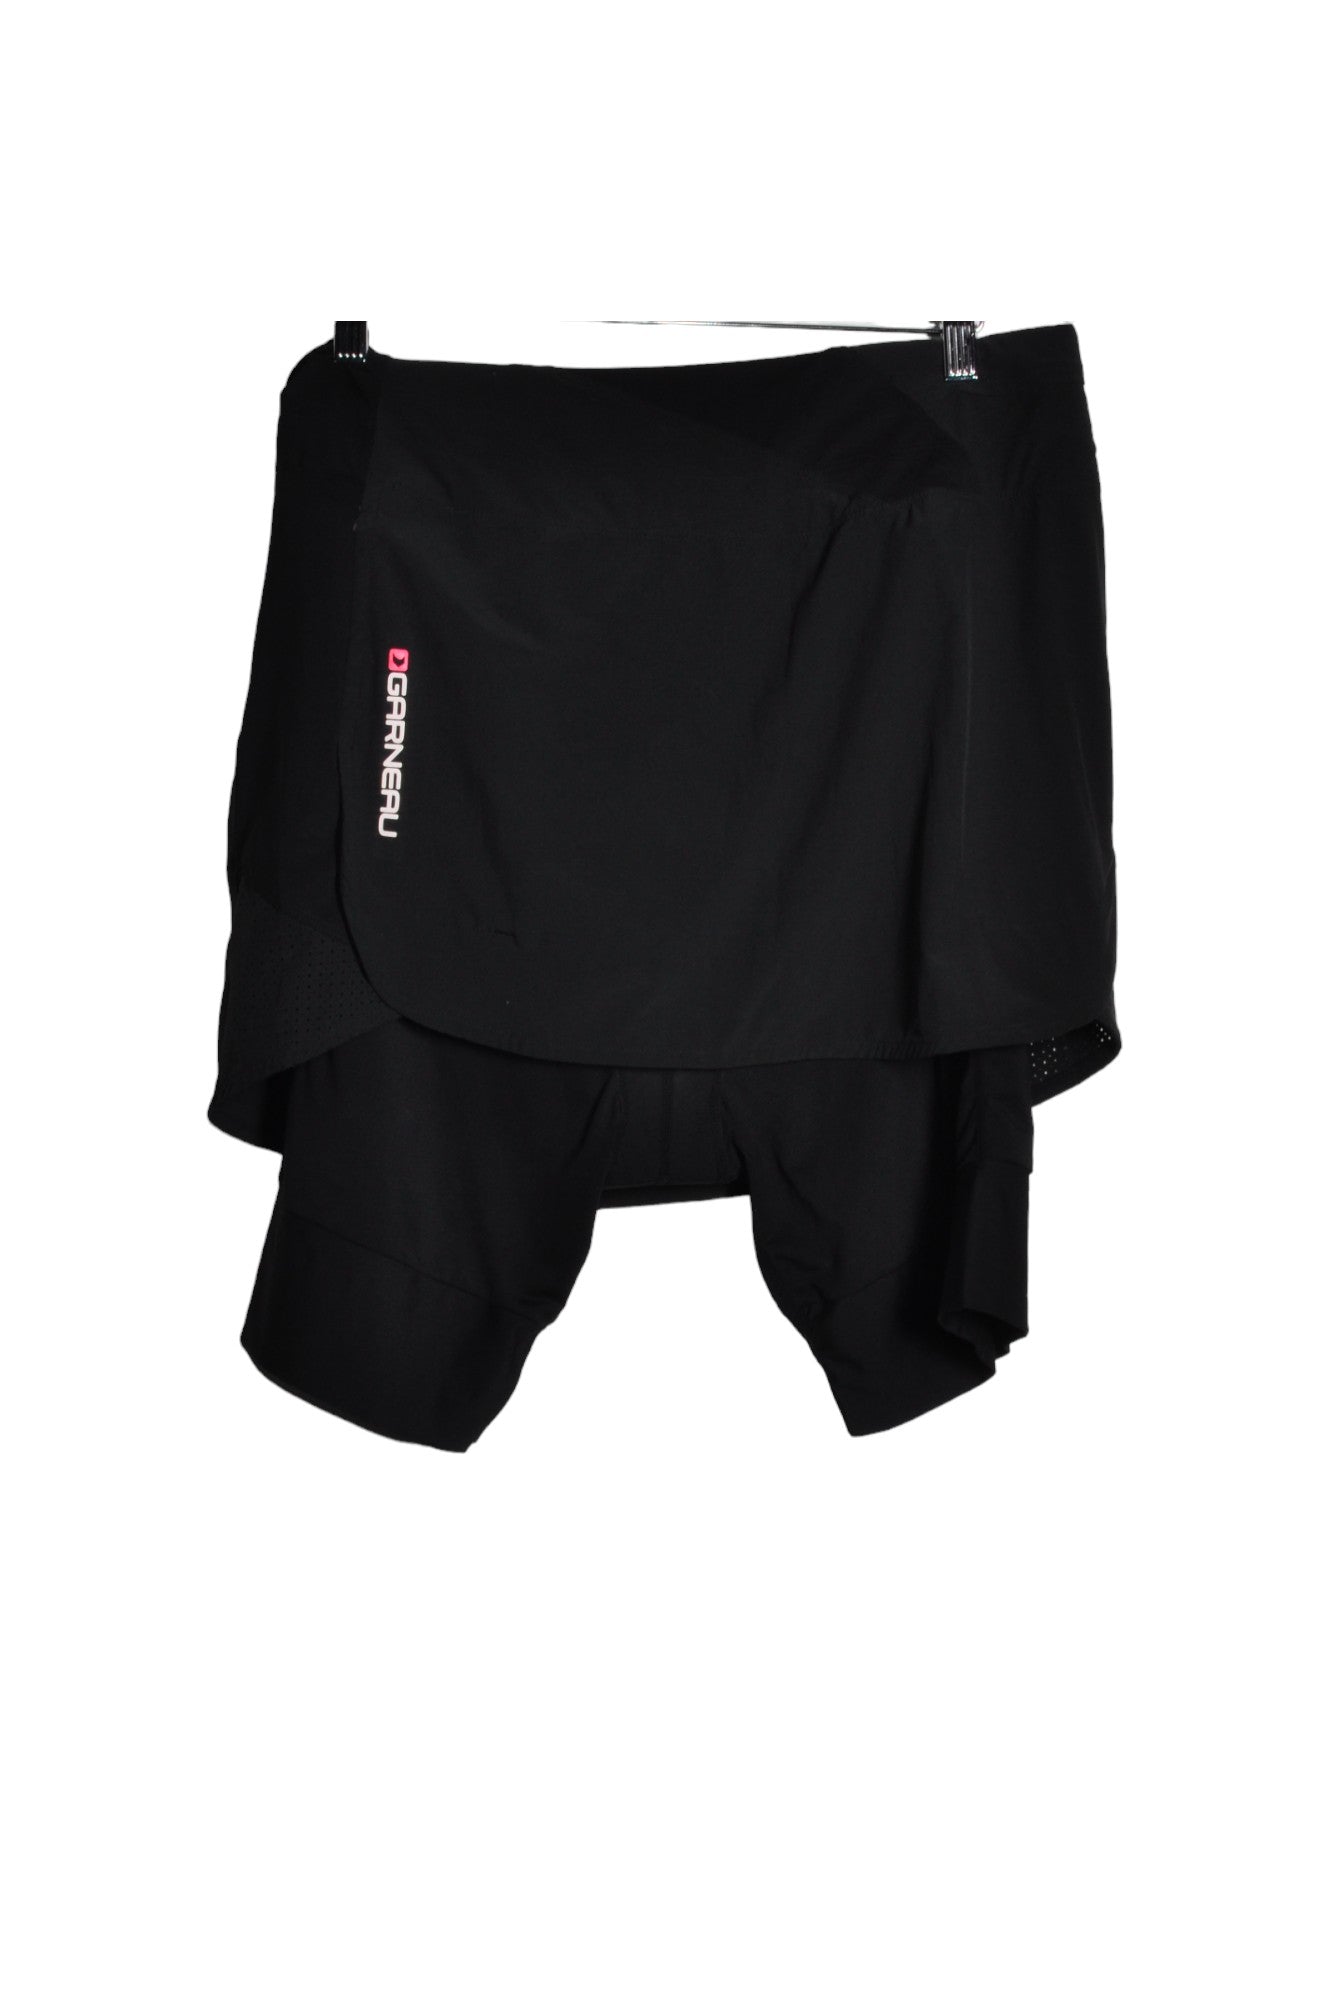 LOUIS GARNEAU Women Activewear Joggings Regular fit in Black - Size XL | 18 $ KOOP